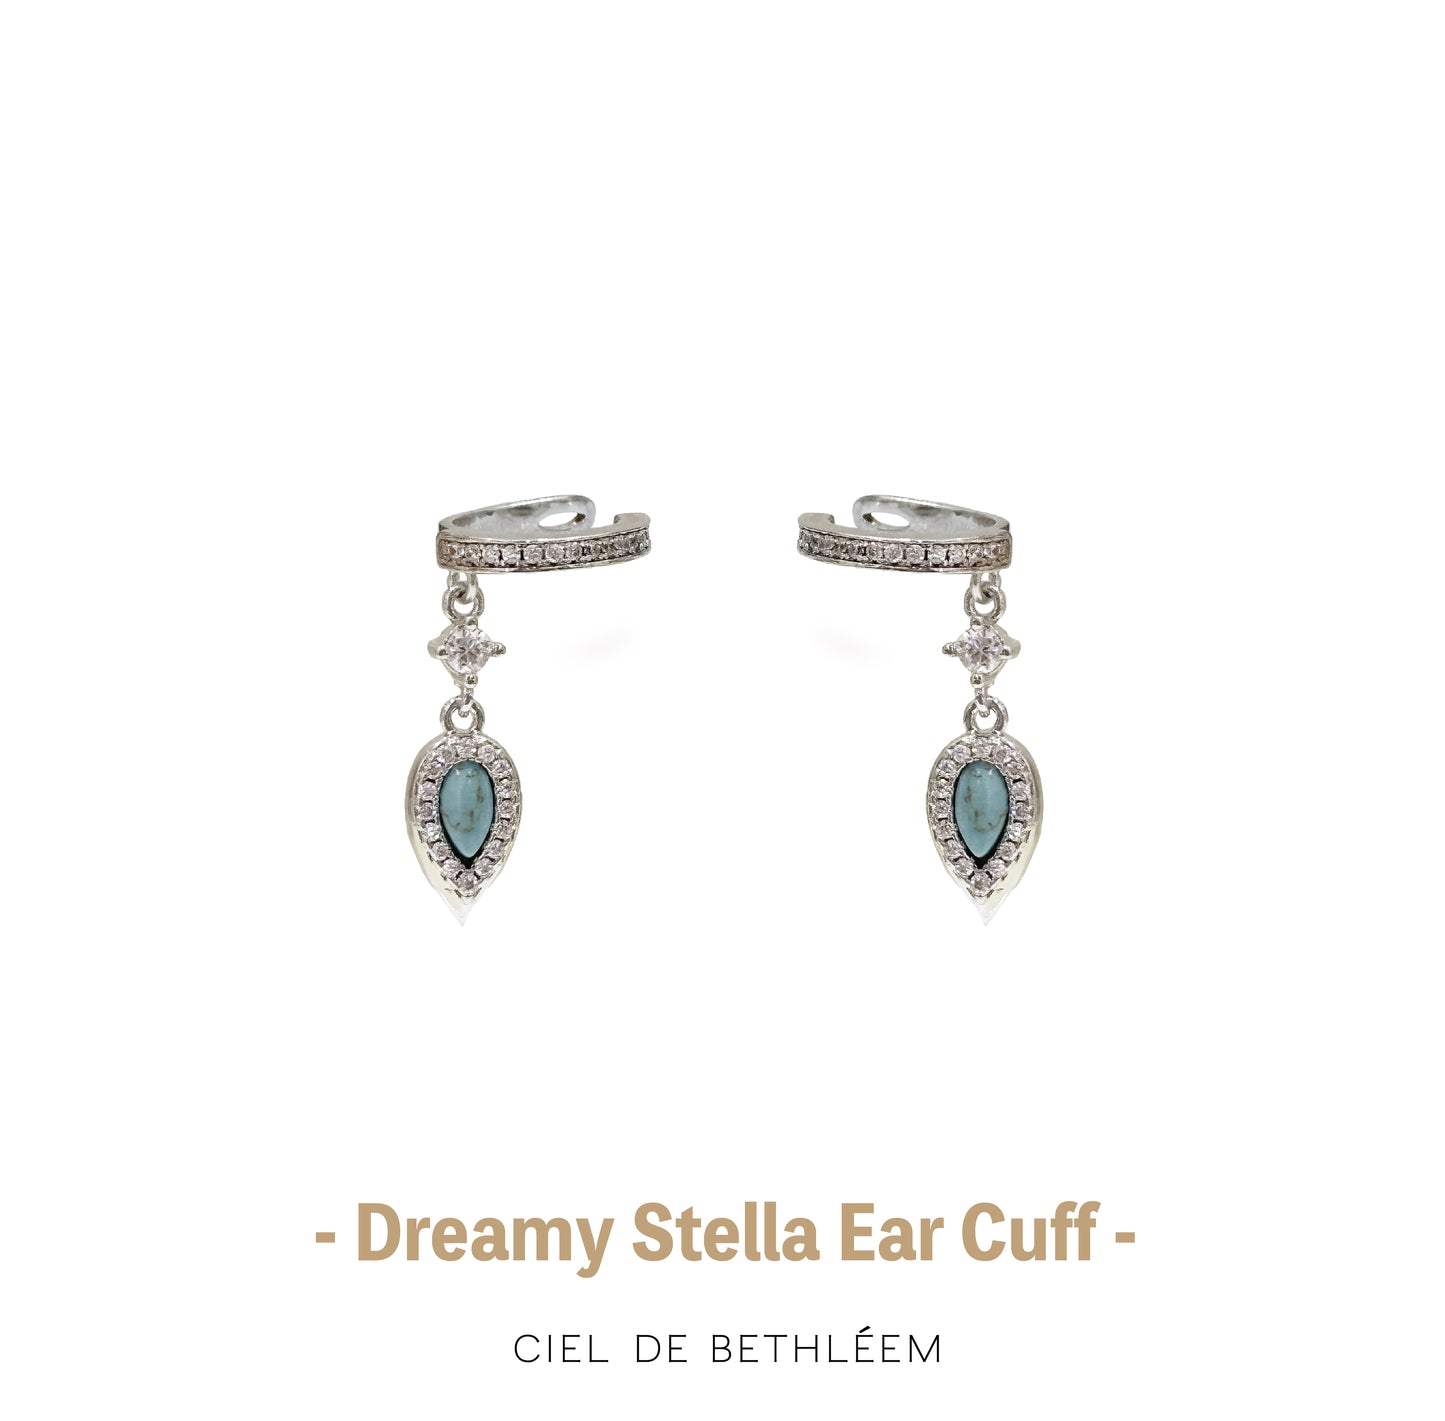 Dreamy Stella Ear Cuff